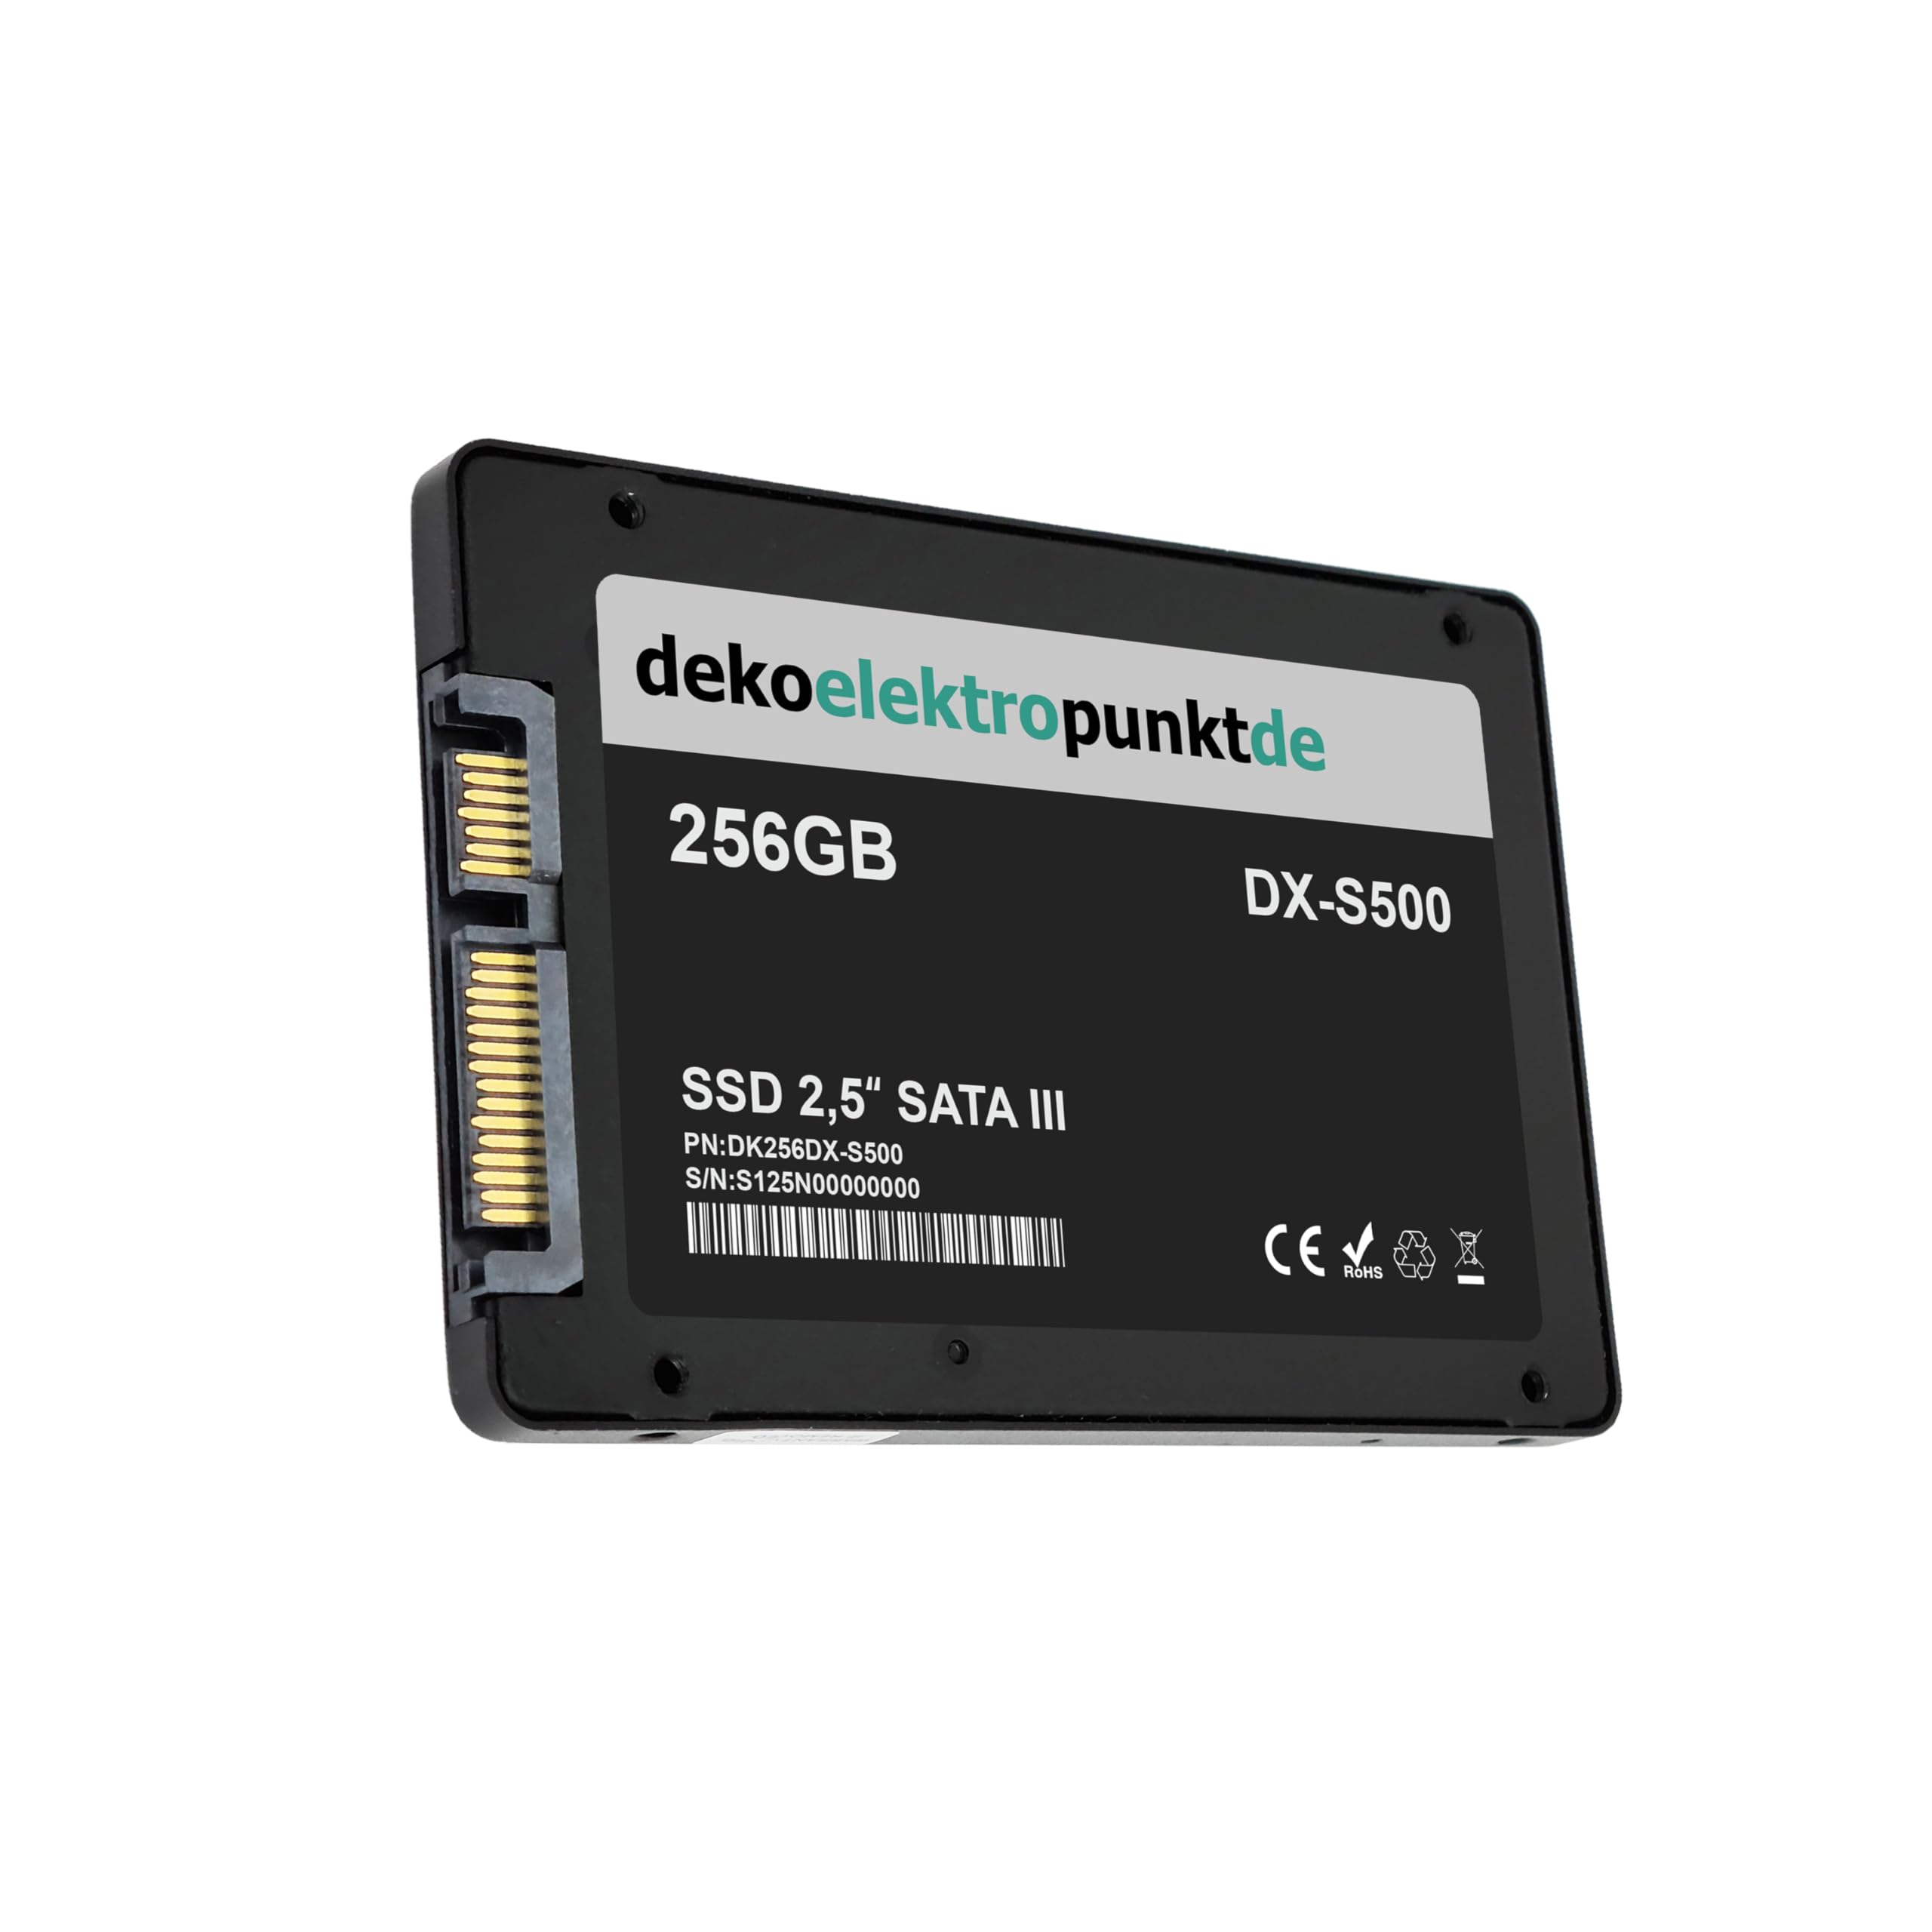 dekoelektropunktde 256GB SSD Festplatte kompatibel mit Toshiba Satellite L875-11M L875-11P L875-11T L875-11U53